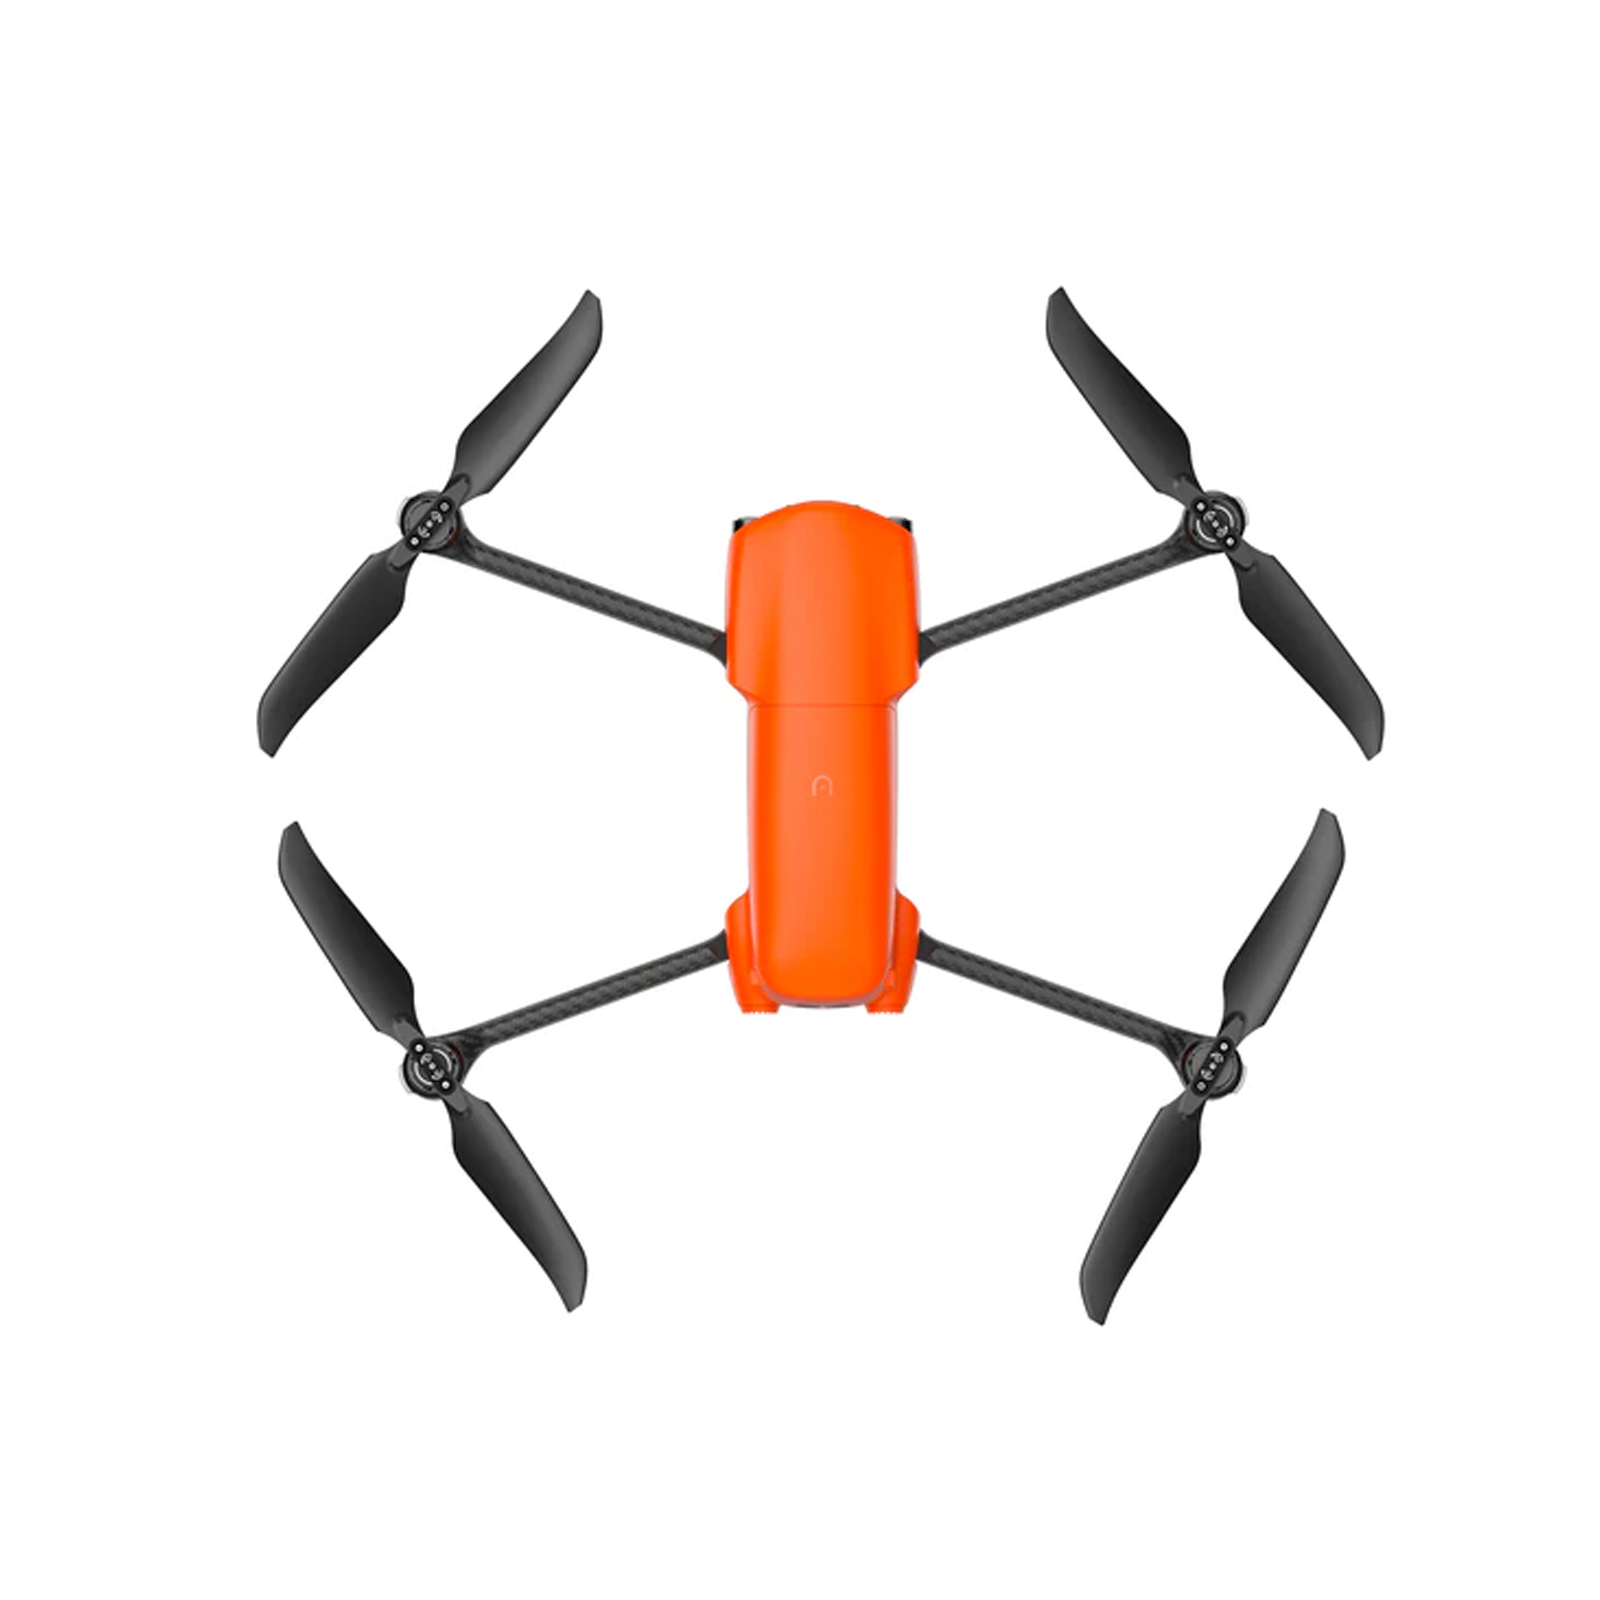 Jusqu'à 40% Mini-drone avec caméra 4K, support pour smartphone